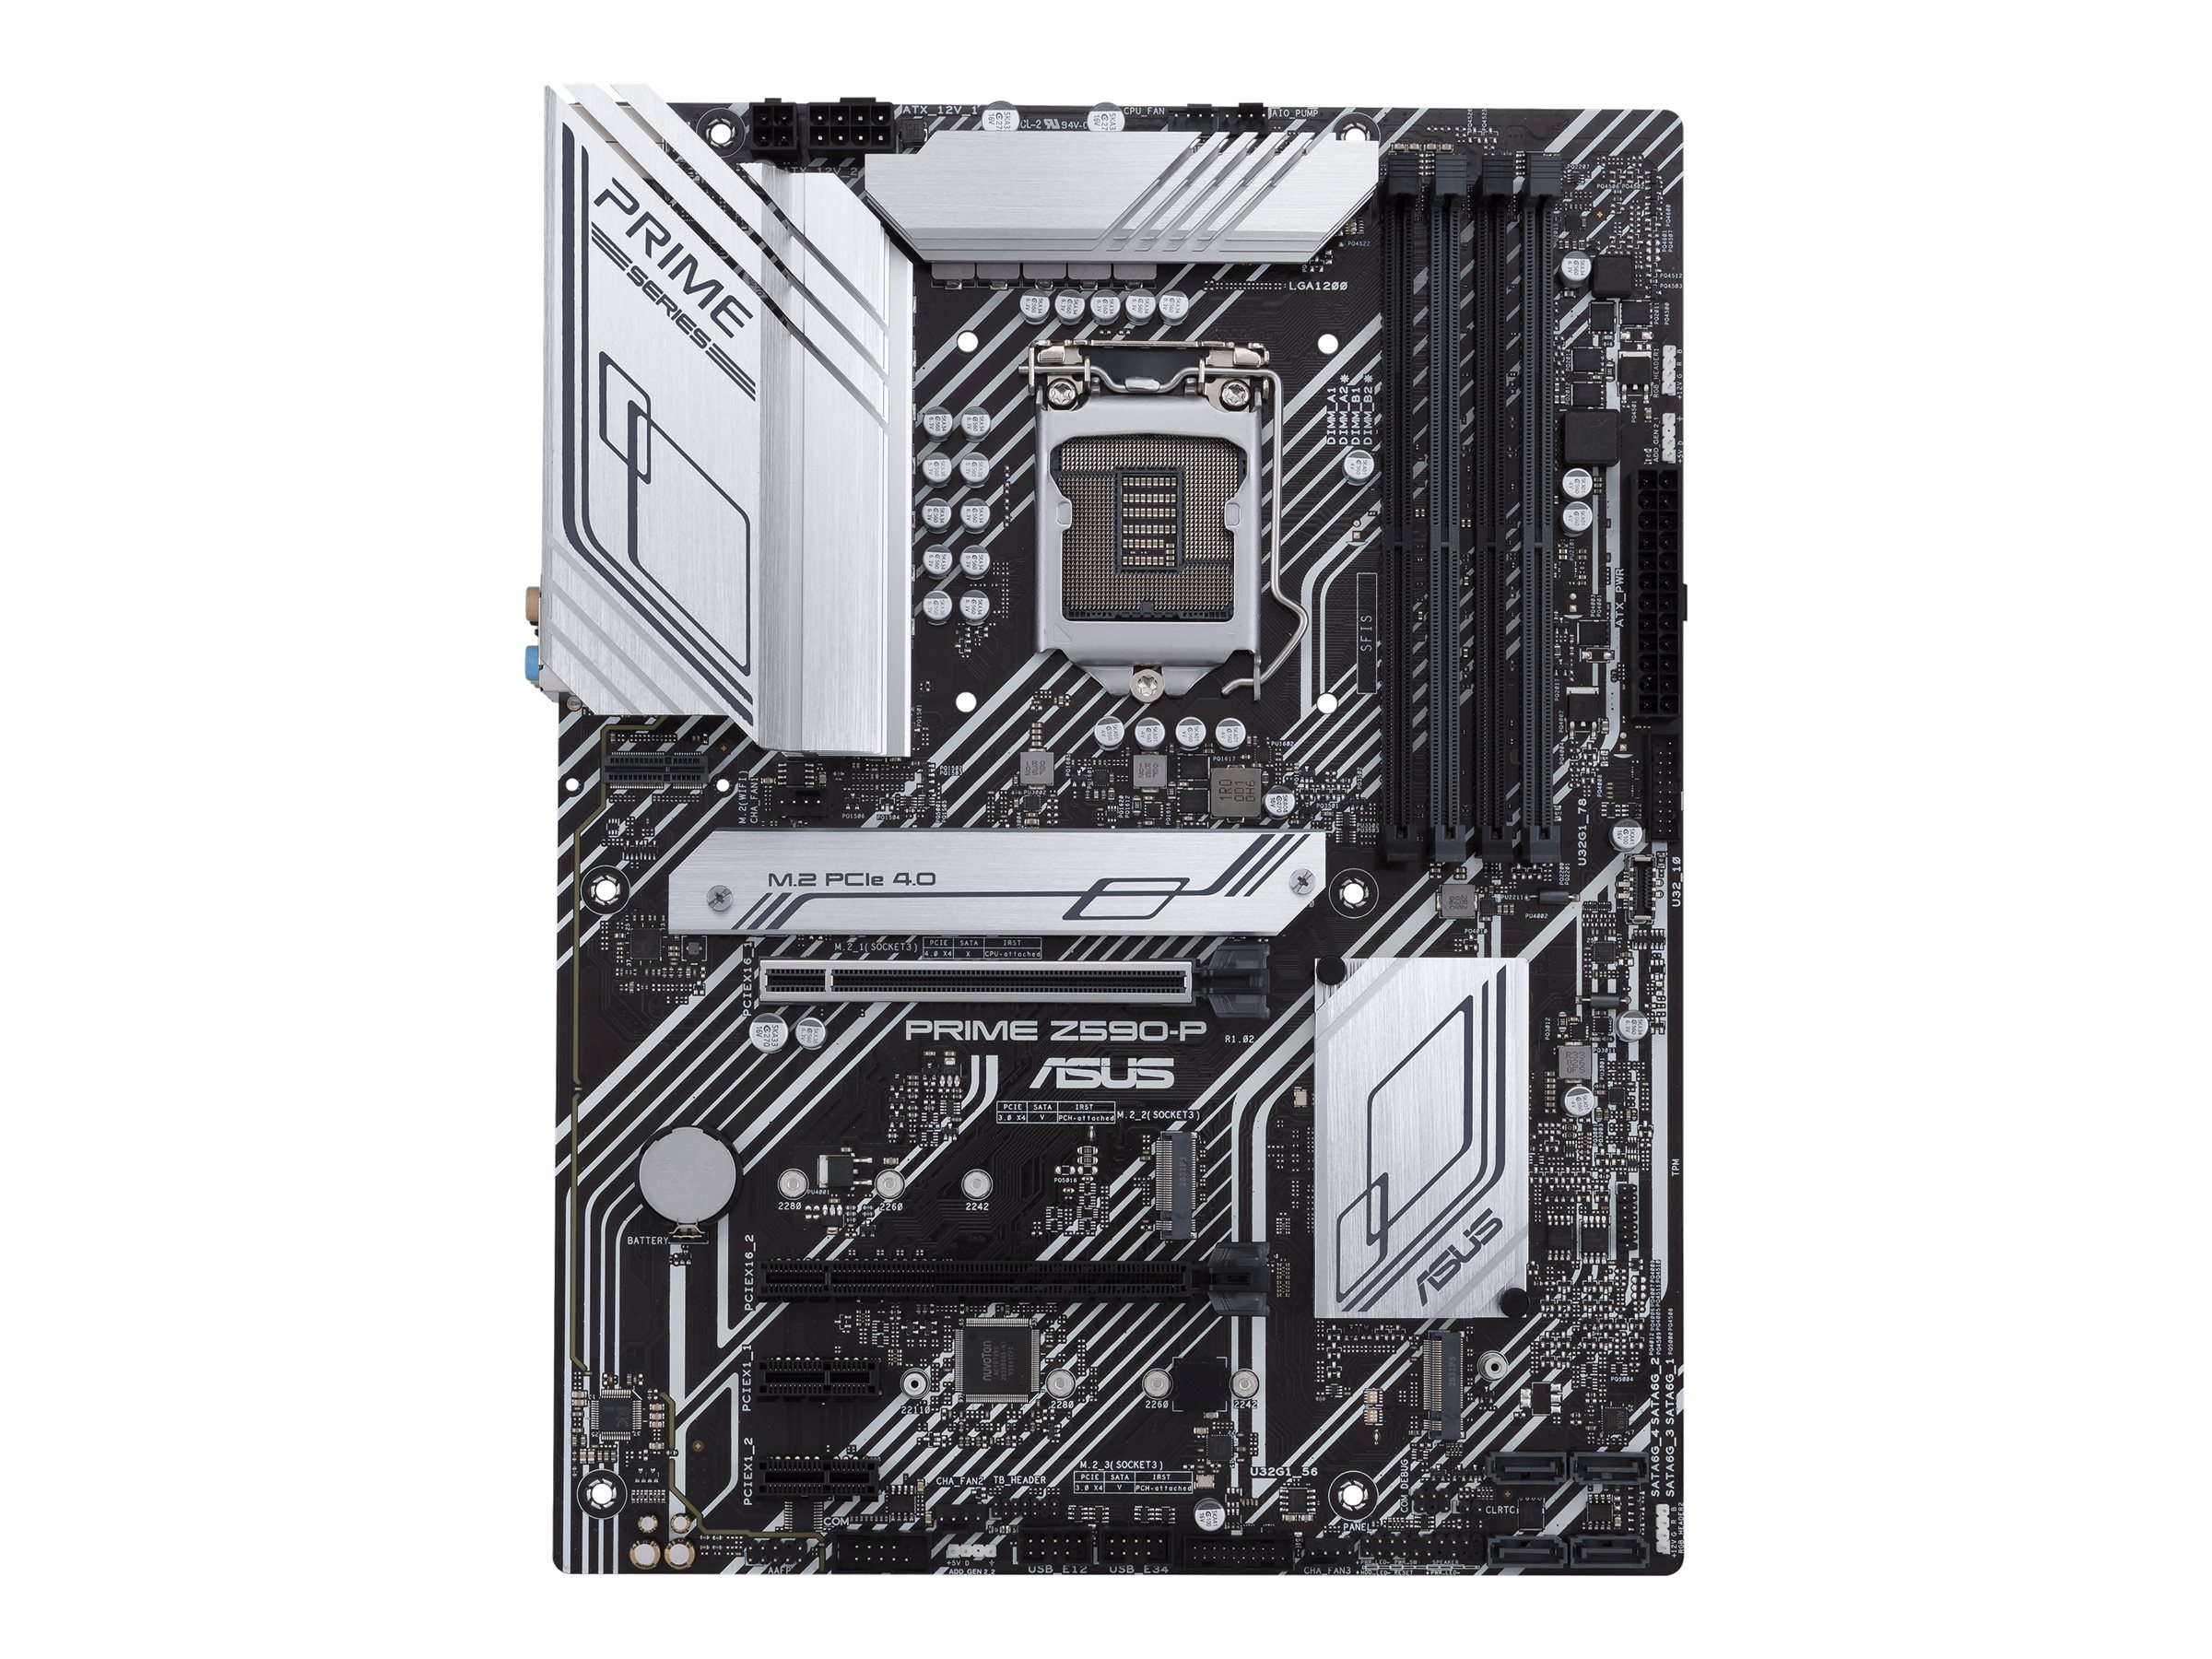 ASUS PRIME Z590-P - Motherboard - ATX - LGA1200-Sockel - Z590 - USB-C Gen1, USB 3.2 Gen 1, USB 3.2 Gen 2, USB-C Gen 2x2 - 2.5 Gigabit LAN - Onboard-Grafik (CPU erforderlich)